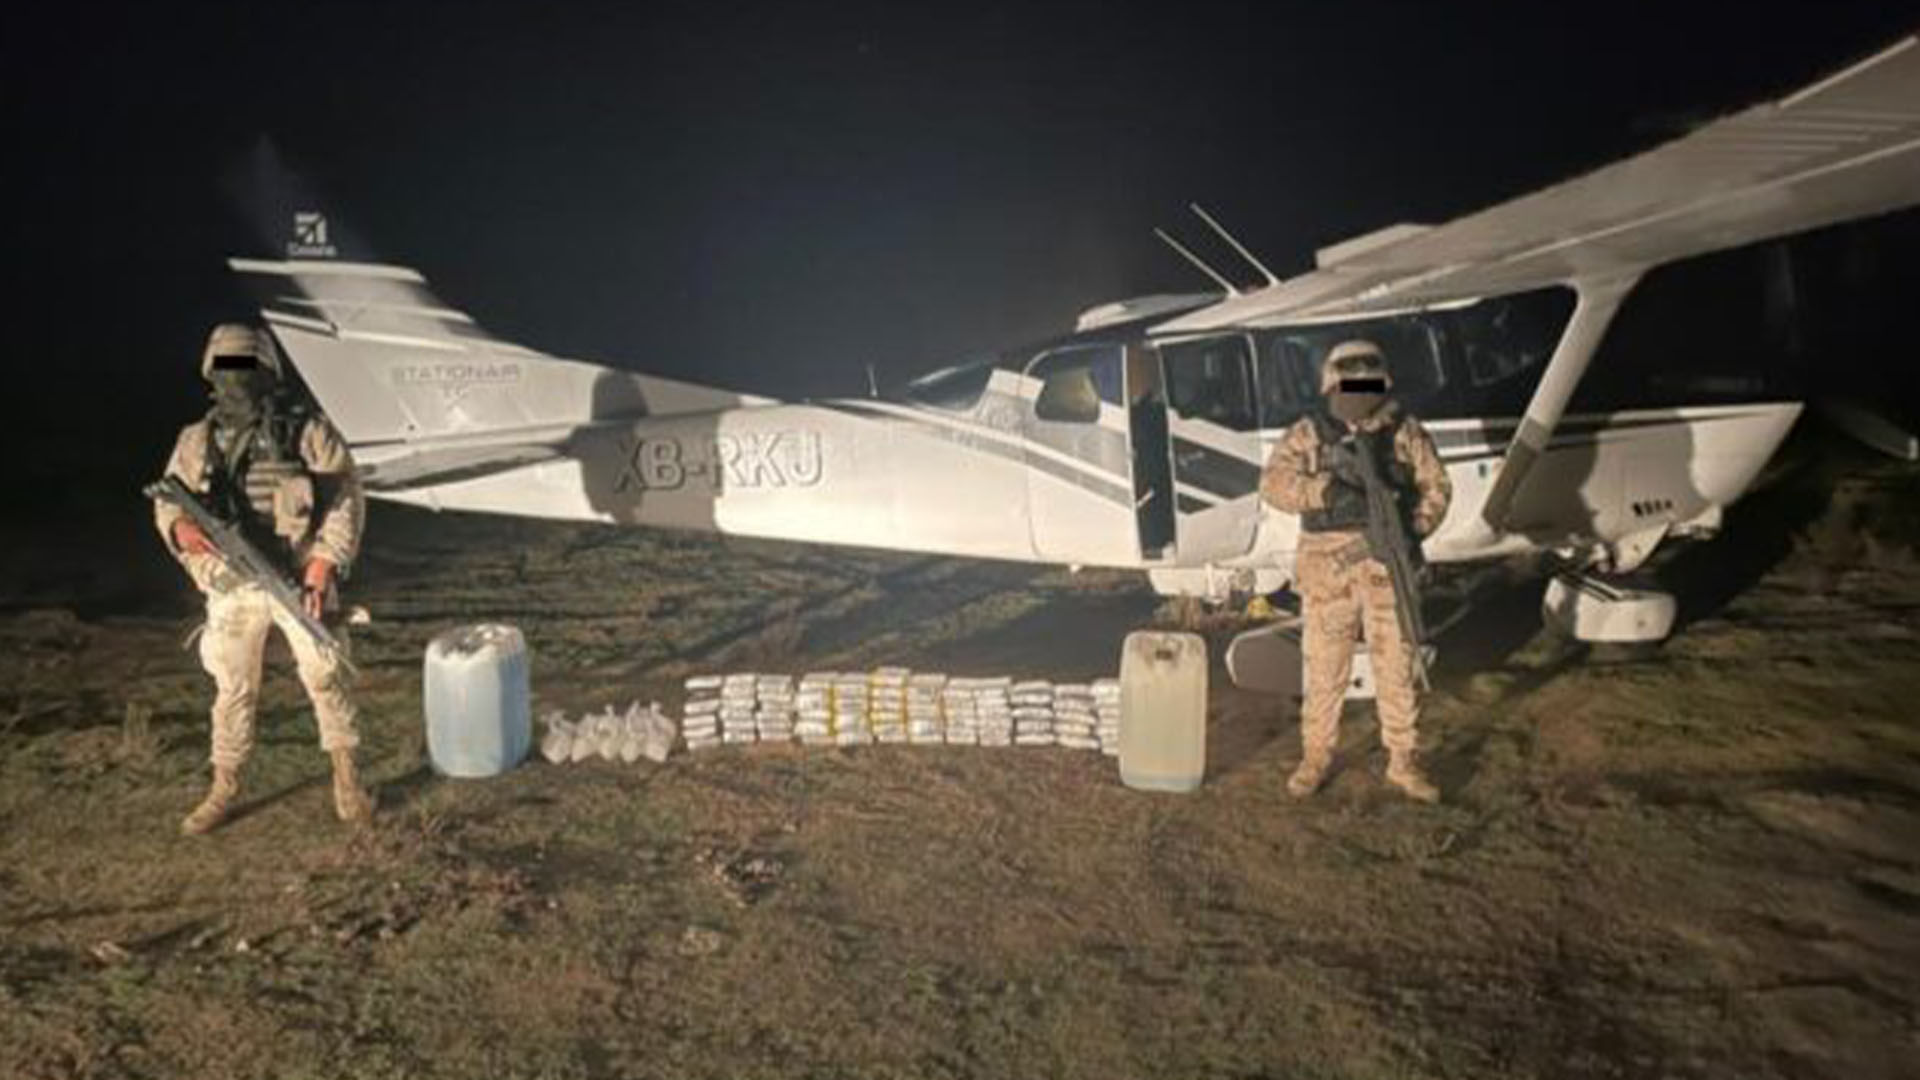 El 27 de marzo se reportó el hallazgo de una avioneta con cargamento de drogas en Ojos Negros (Foto: Twitter@HrPelotonmx)